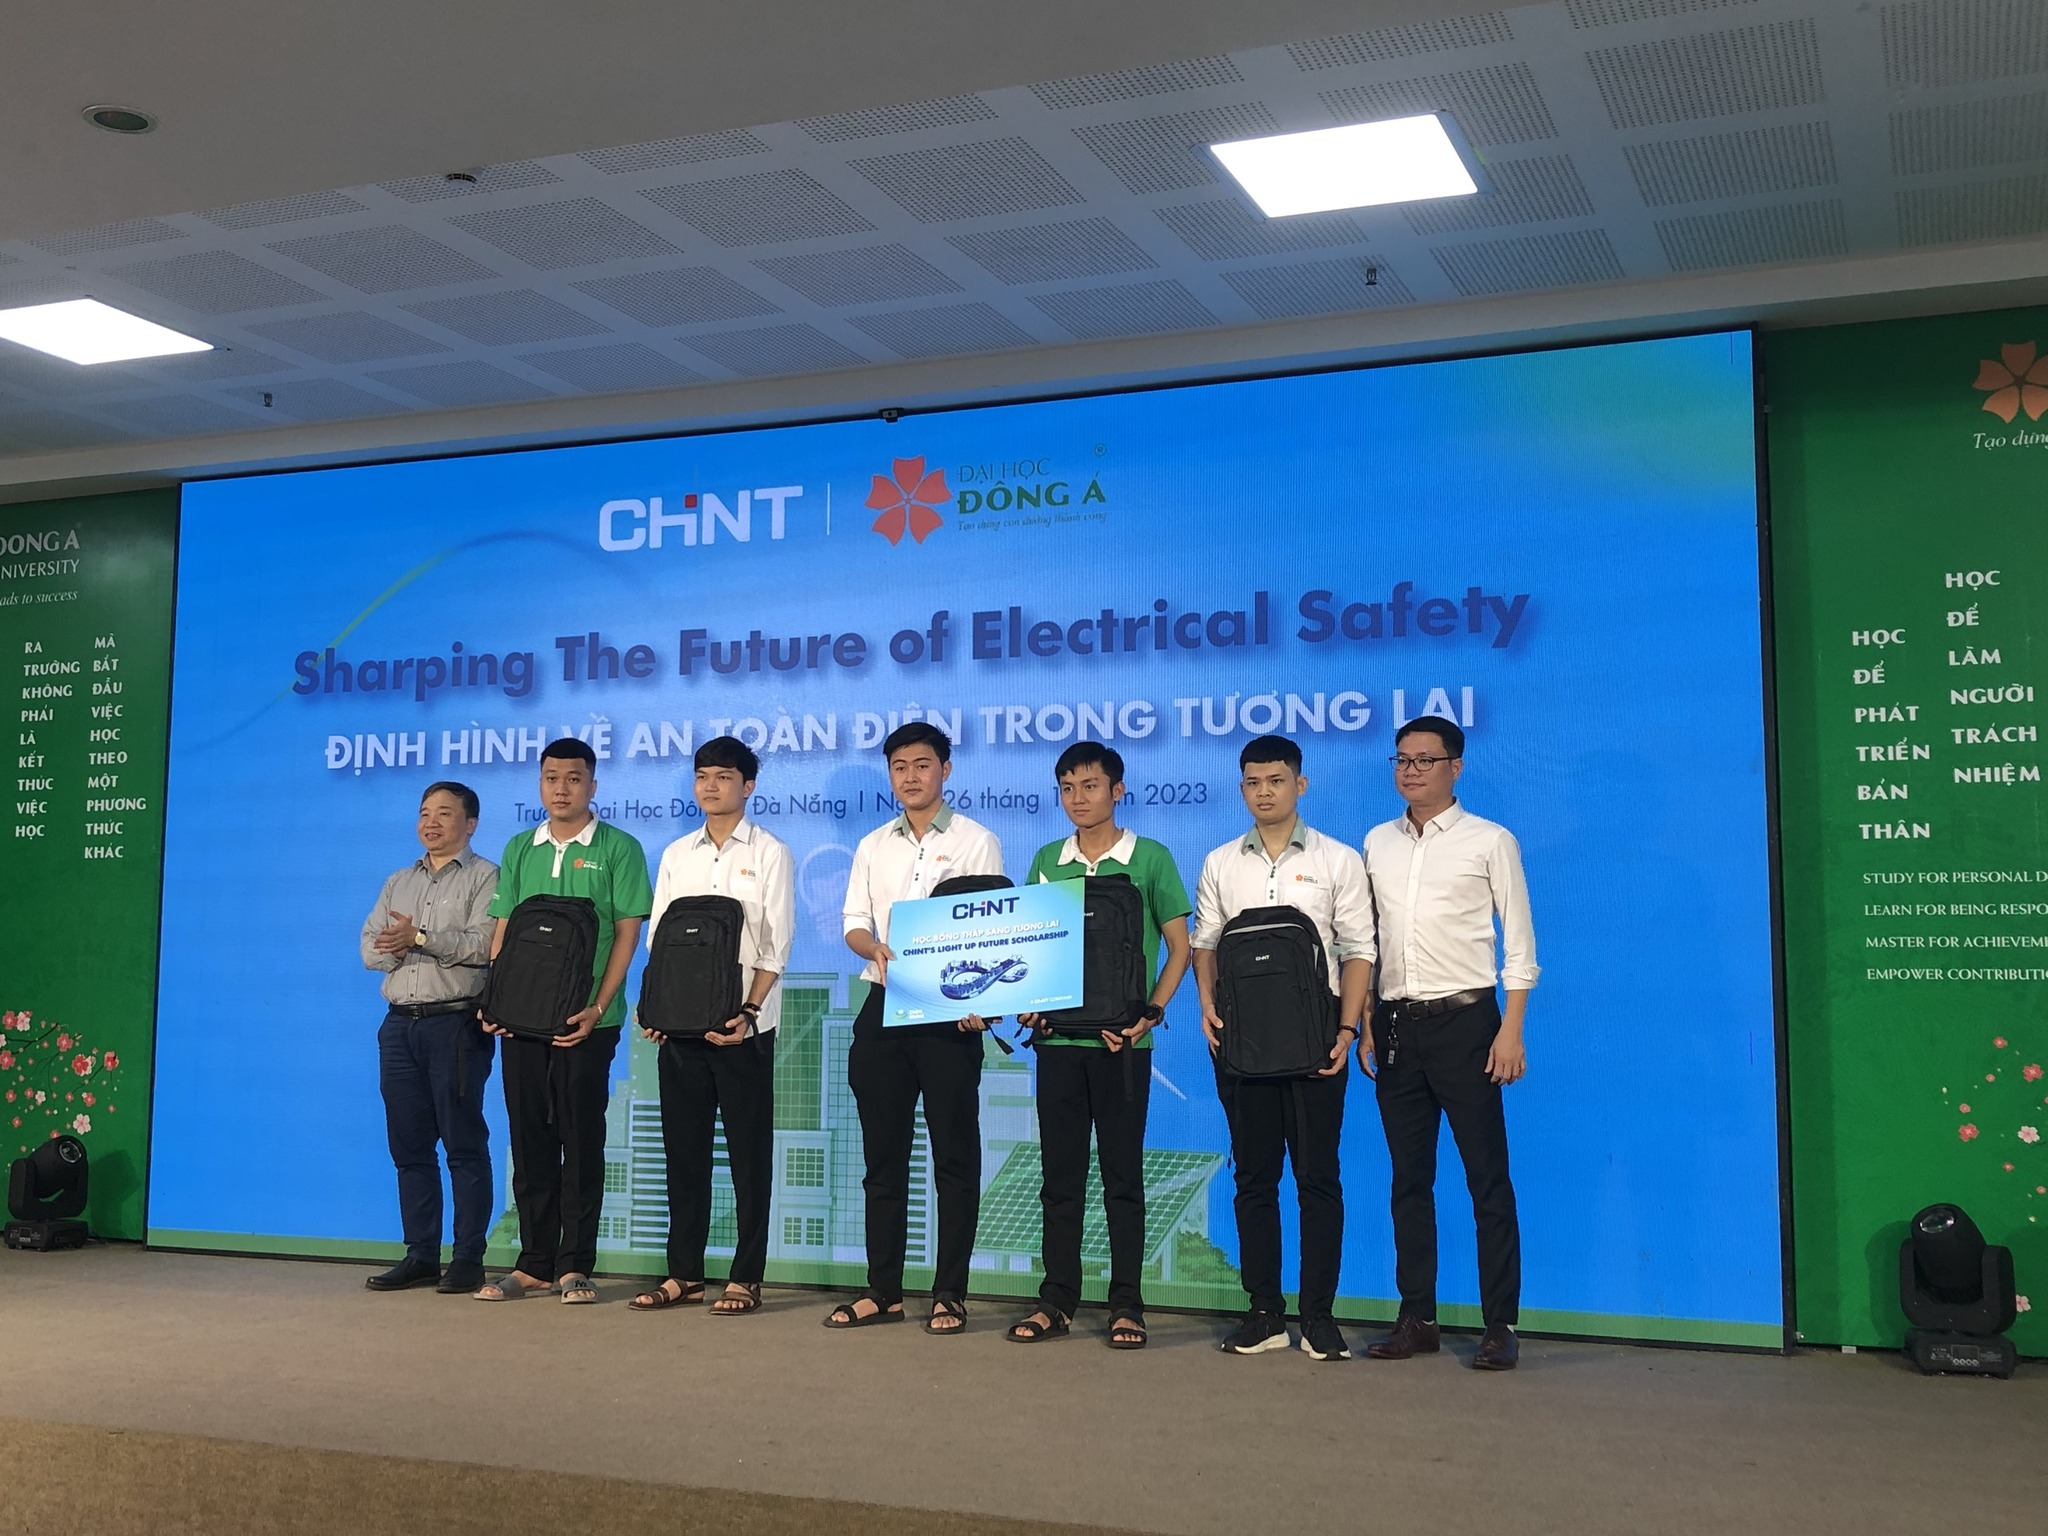 Hội thảo chủ đề "Sharping The Future of Electrical Safety" tại ĐH Đông Á